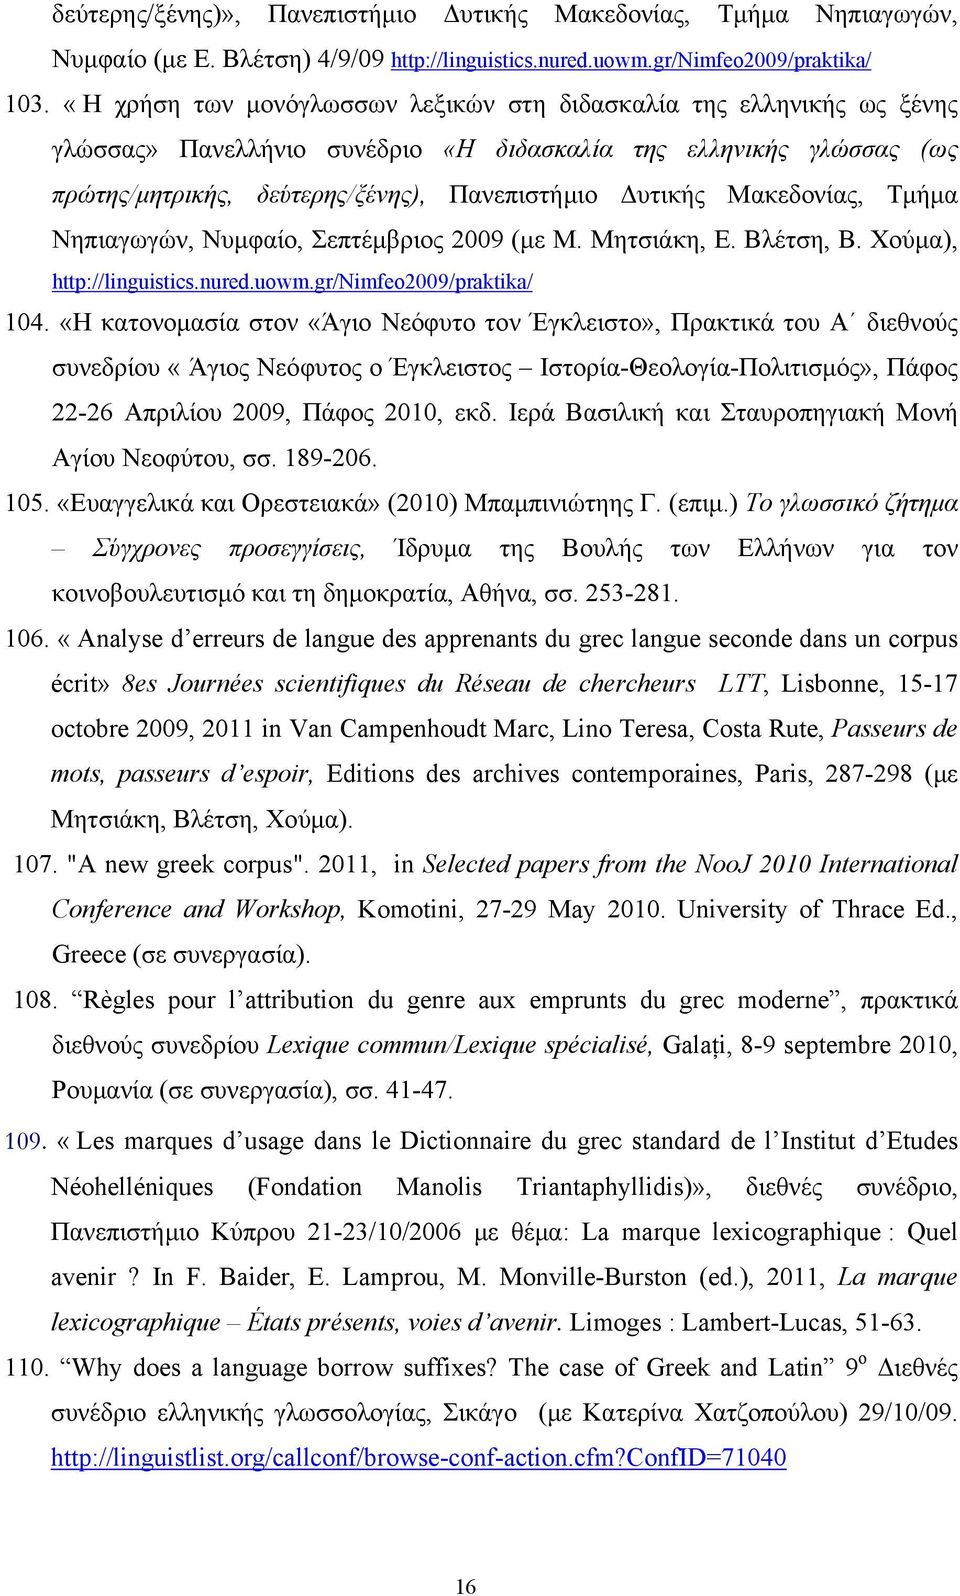 Μακεδονίας, Τμήμα Νηπιαγωγών, Νυμφαίο, Σεπτέμβριος 2009 (με Μ. Μητσιάκη, Ε. Βλέτση, Β. Χούμα), http://linguistics.nured.uowm.gr/nimfeo2009/praktika/ 104.